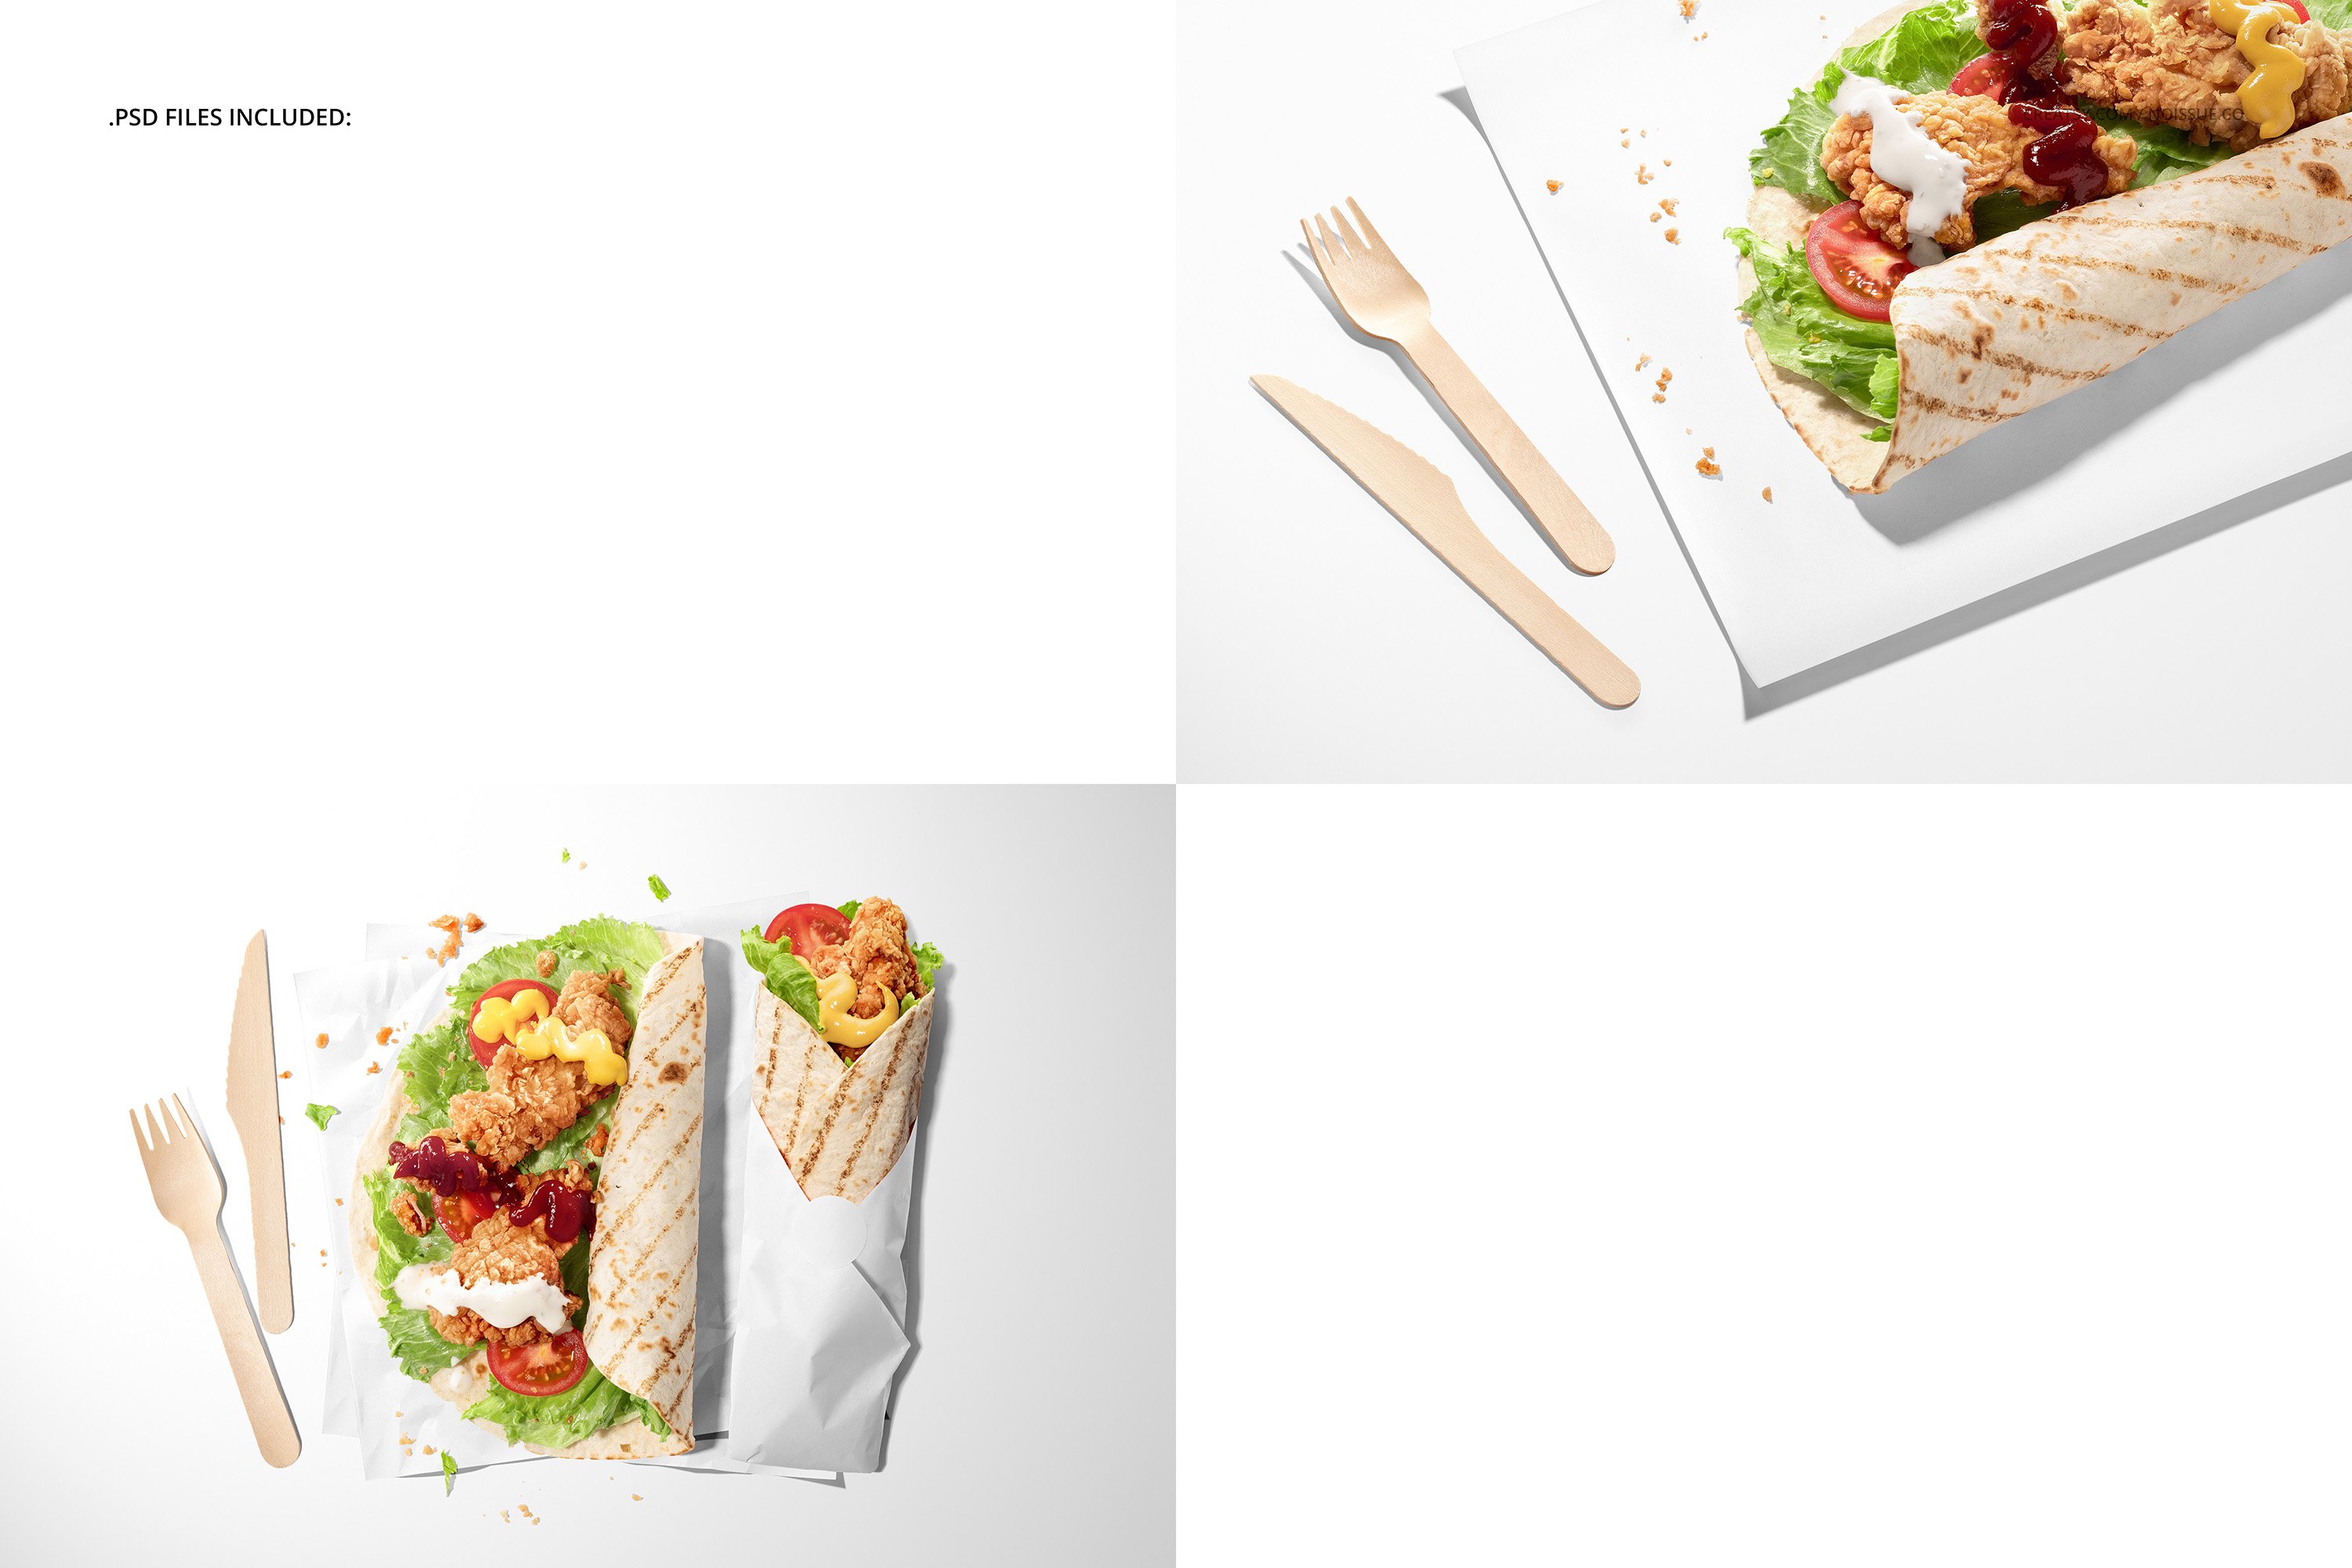 卷饼快餐食品安全包装纸设计Ps智能贴图样机模板 Food Safe Paper Mockup